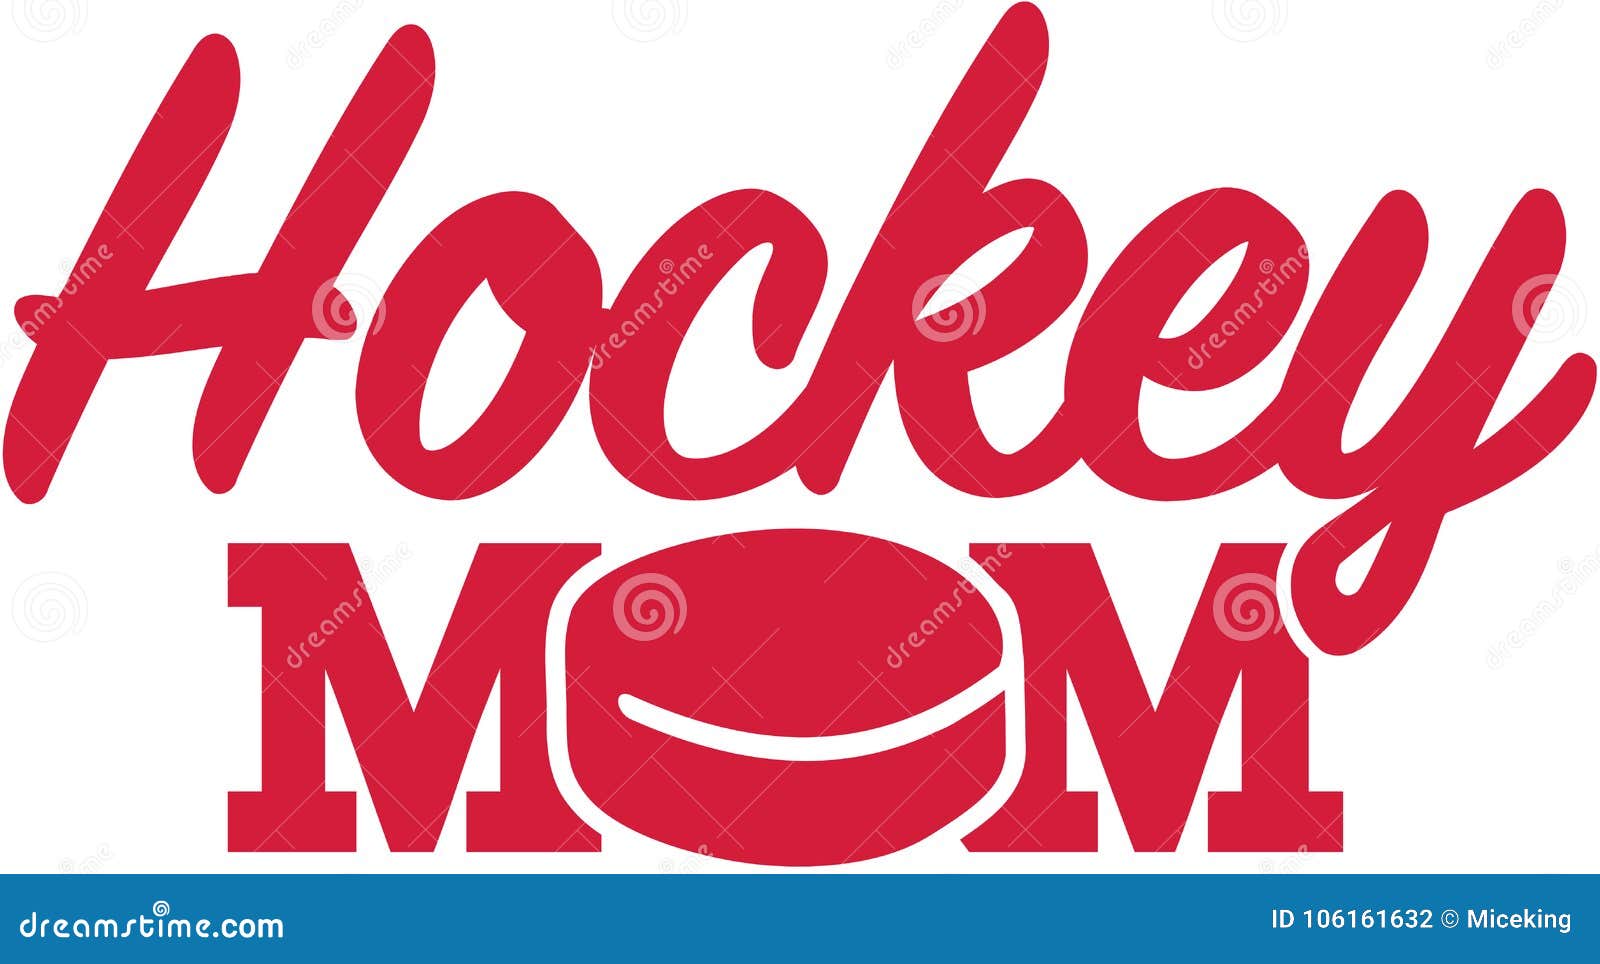 hockey mom